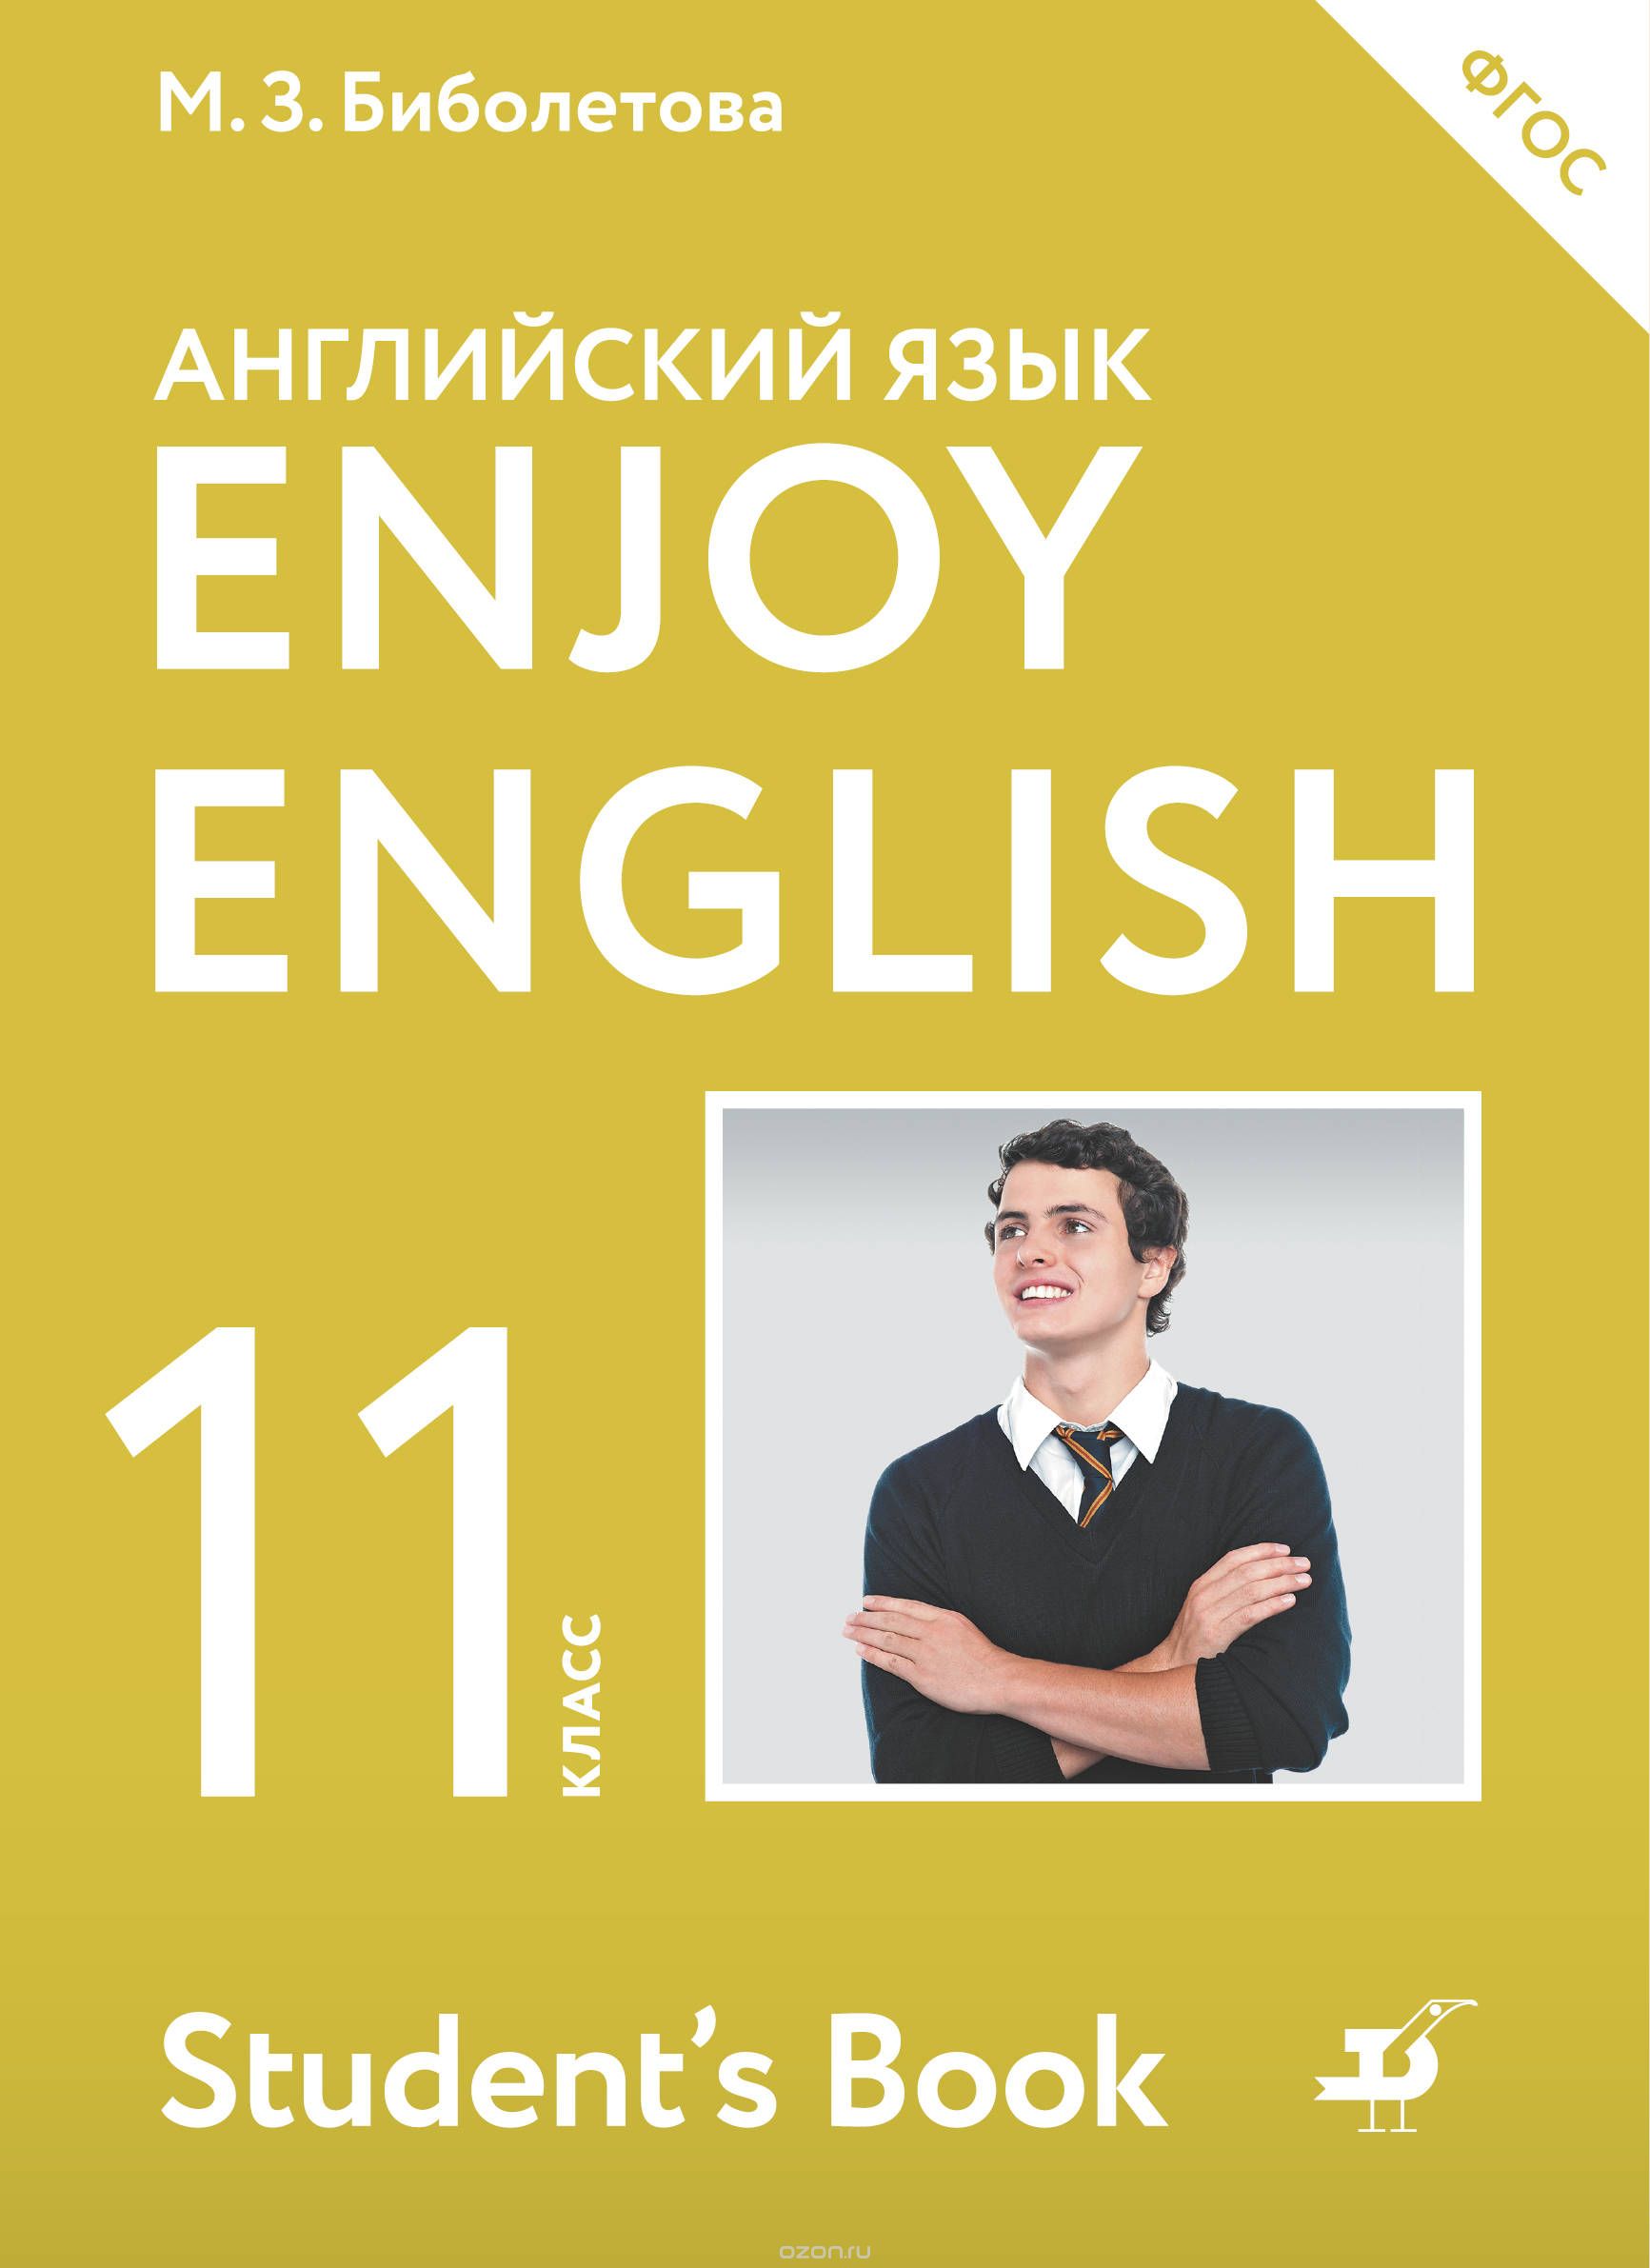 Enjoy English / Английский с удовольствием. Базовый уровень. 11 класс, М. З. Биболетова, Е. Е. Бабушис, Н. Д. Снежко